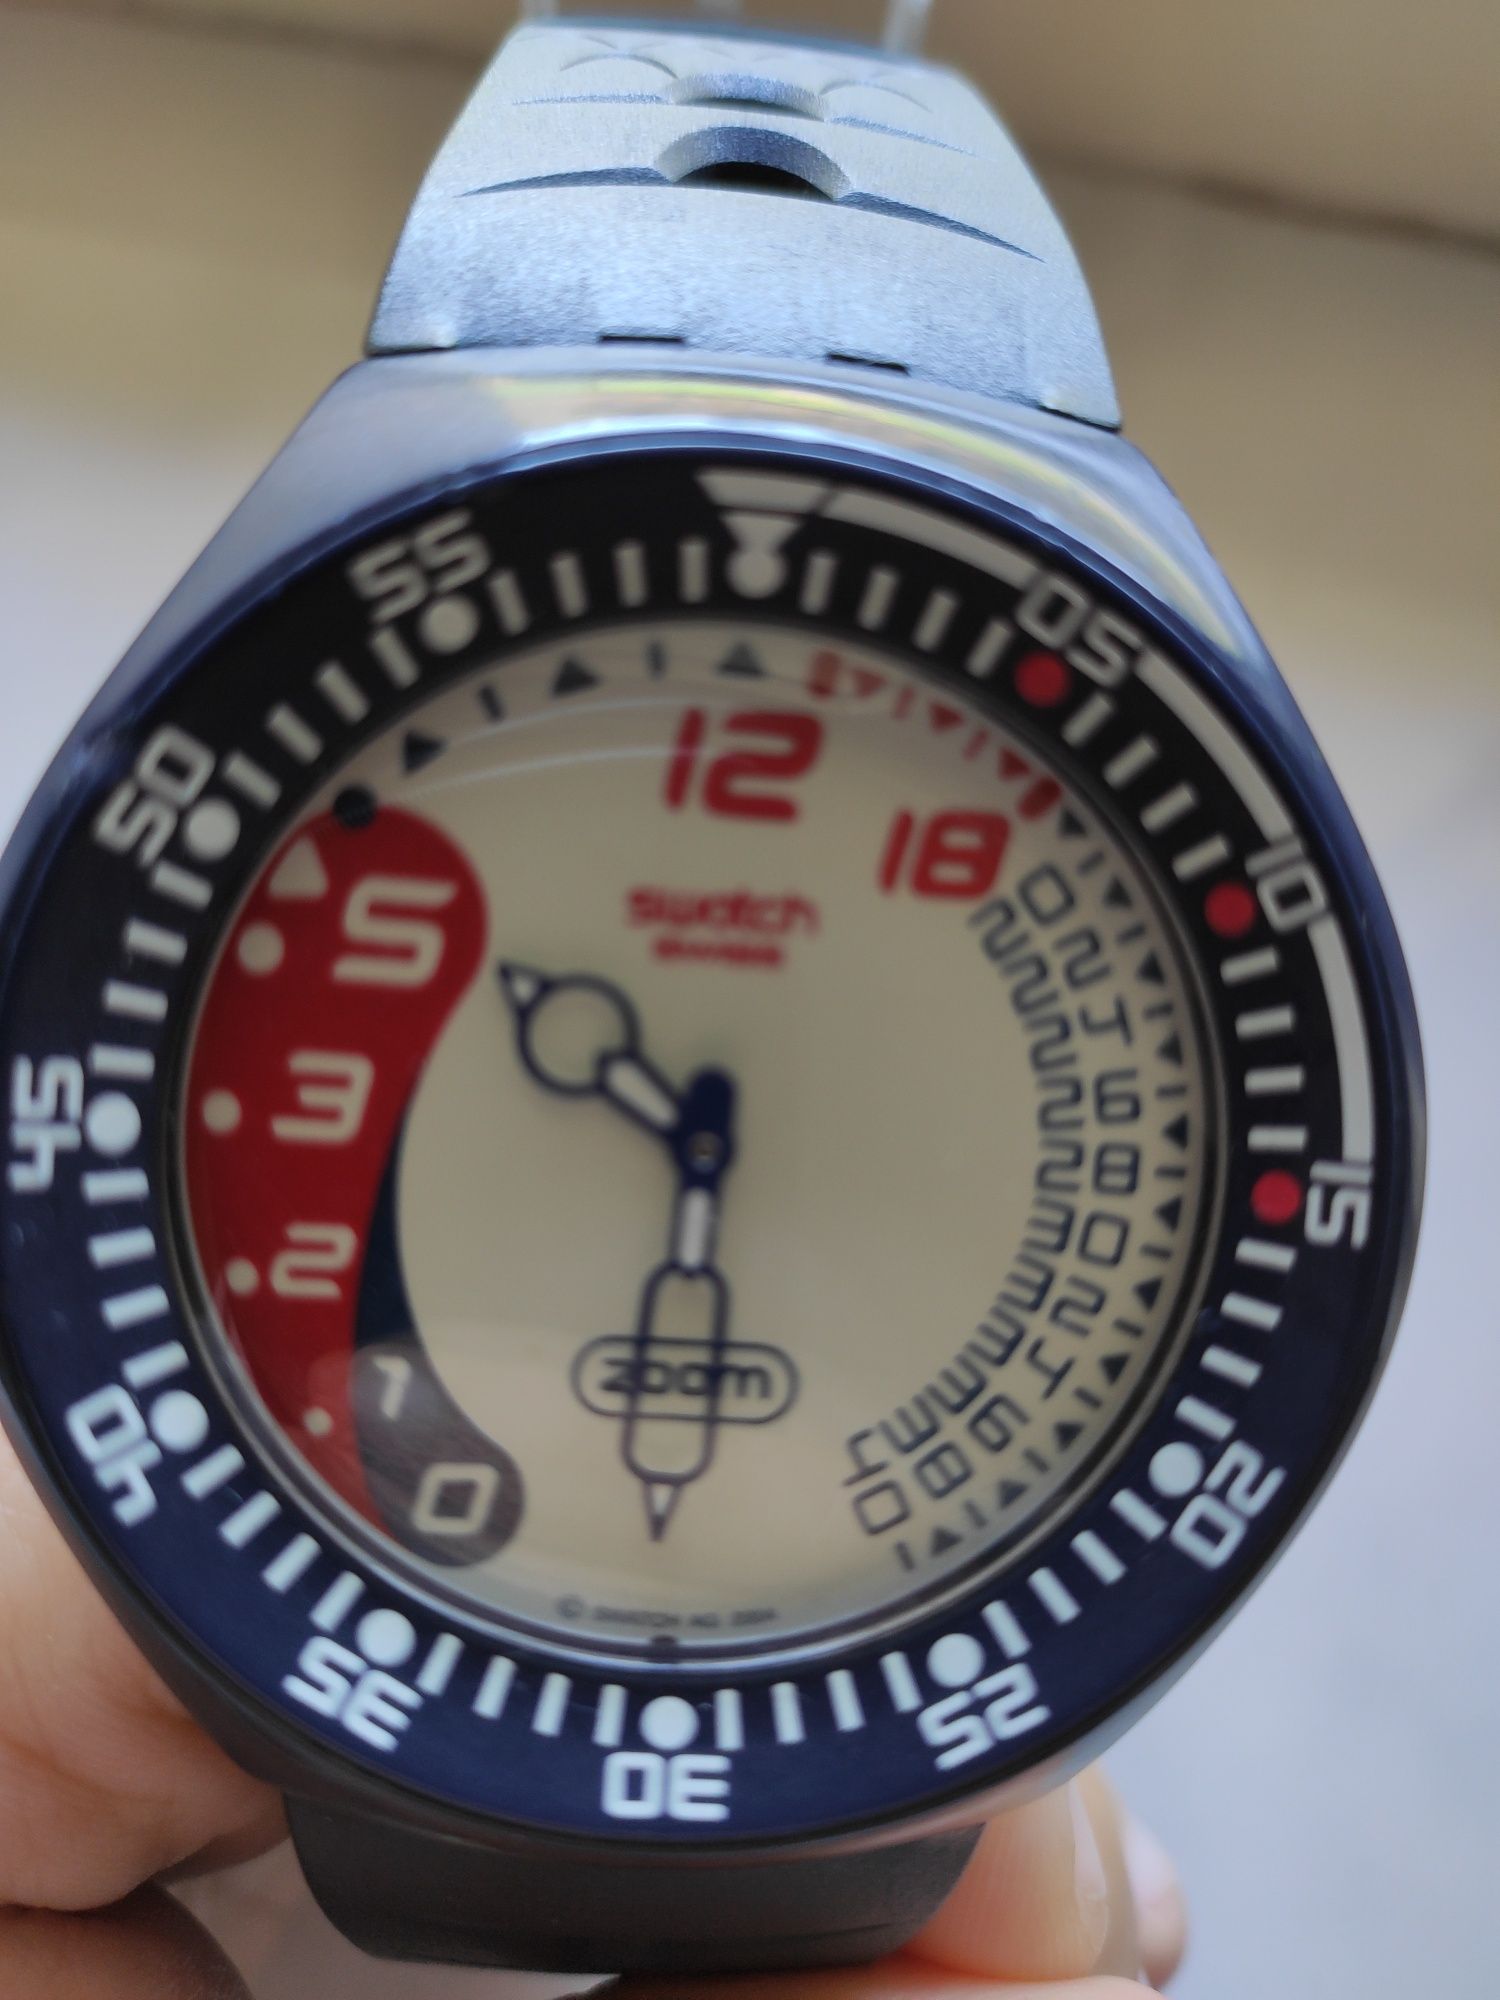 Relógio Swatch, usado mas em muito bom estado!